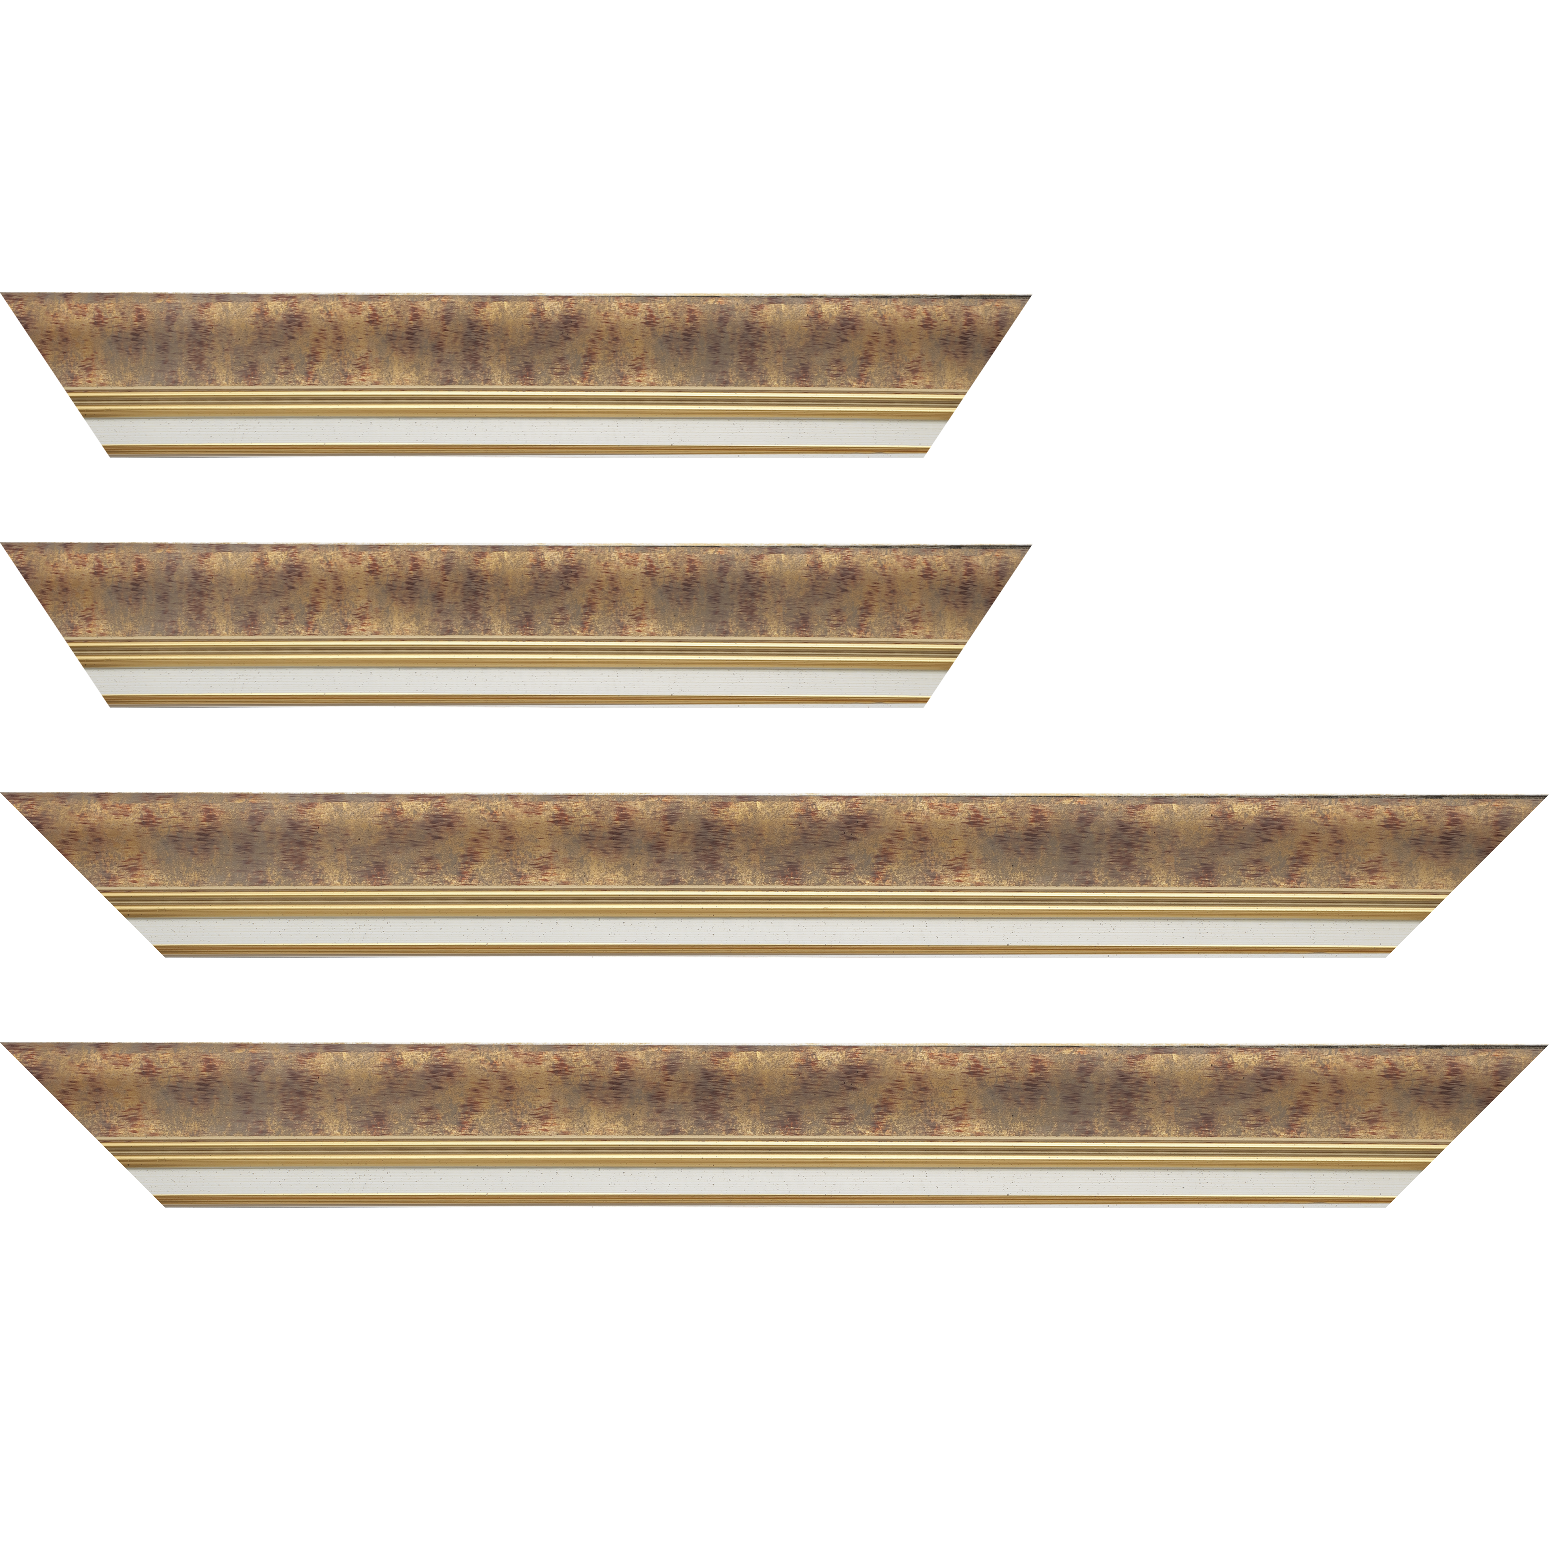 Baguette bois profil incurvé largeur 5.7cm de couleur bordeaux patiné fond or marie louise blanche mouchetée filet or intégré - 30x90